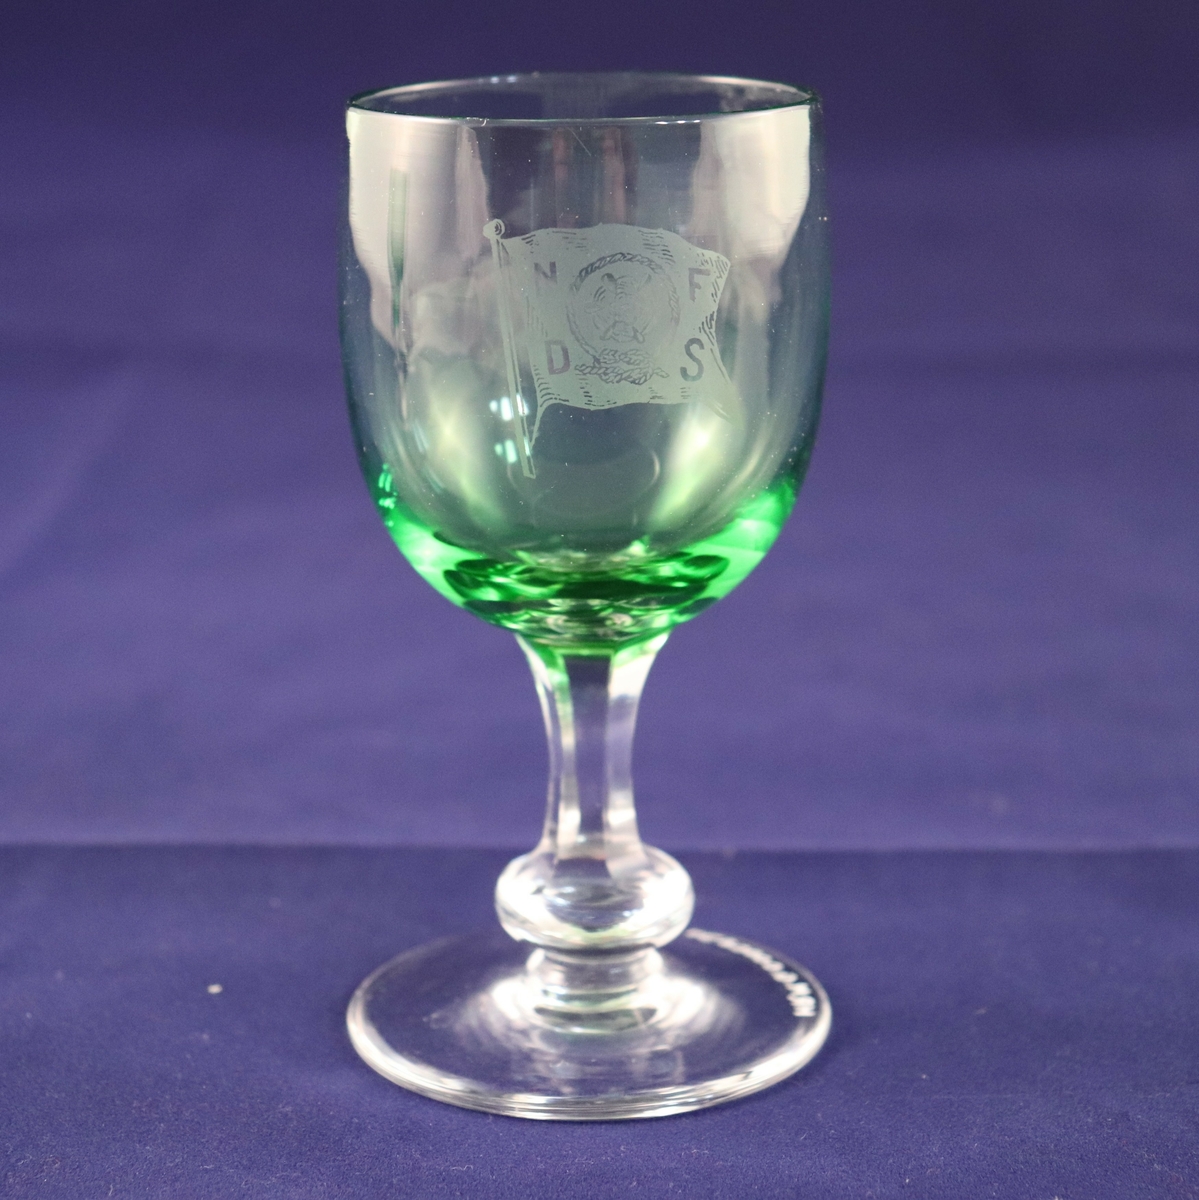 Hetvinsglass med sekskantet stett og rund plate nederst. Glasset er farget grønt med blank stett. Rederiflagget til Det Nordenfjeldske Dampskibsselskab er gravert inn på siden.